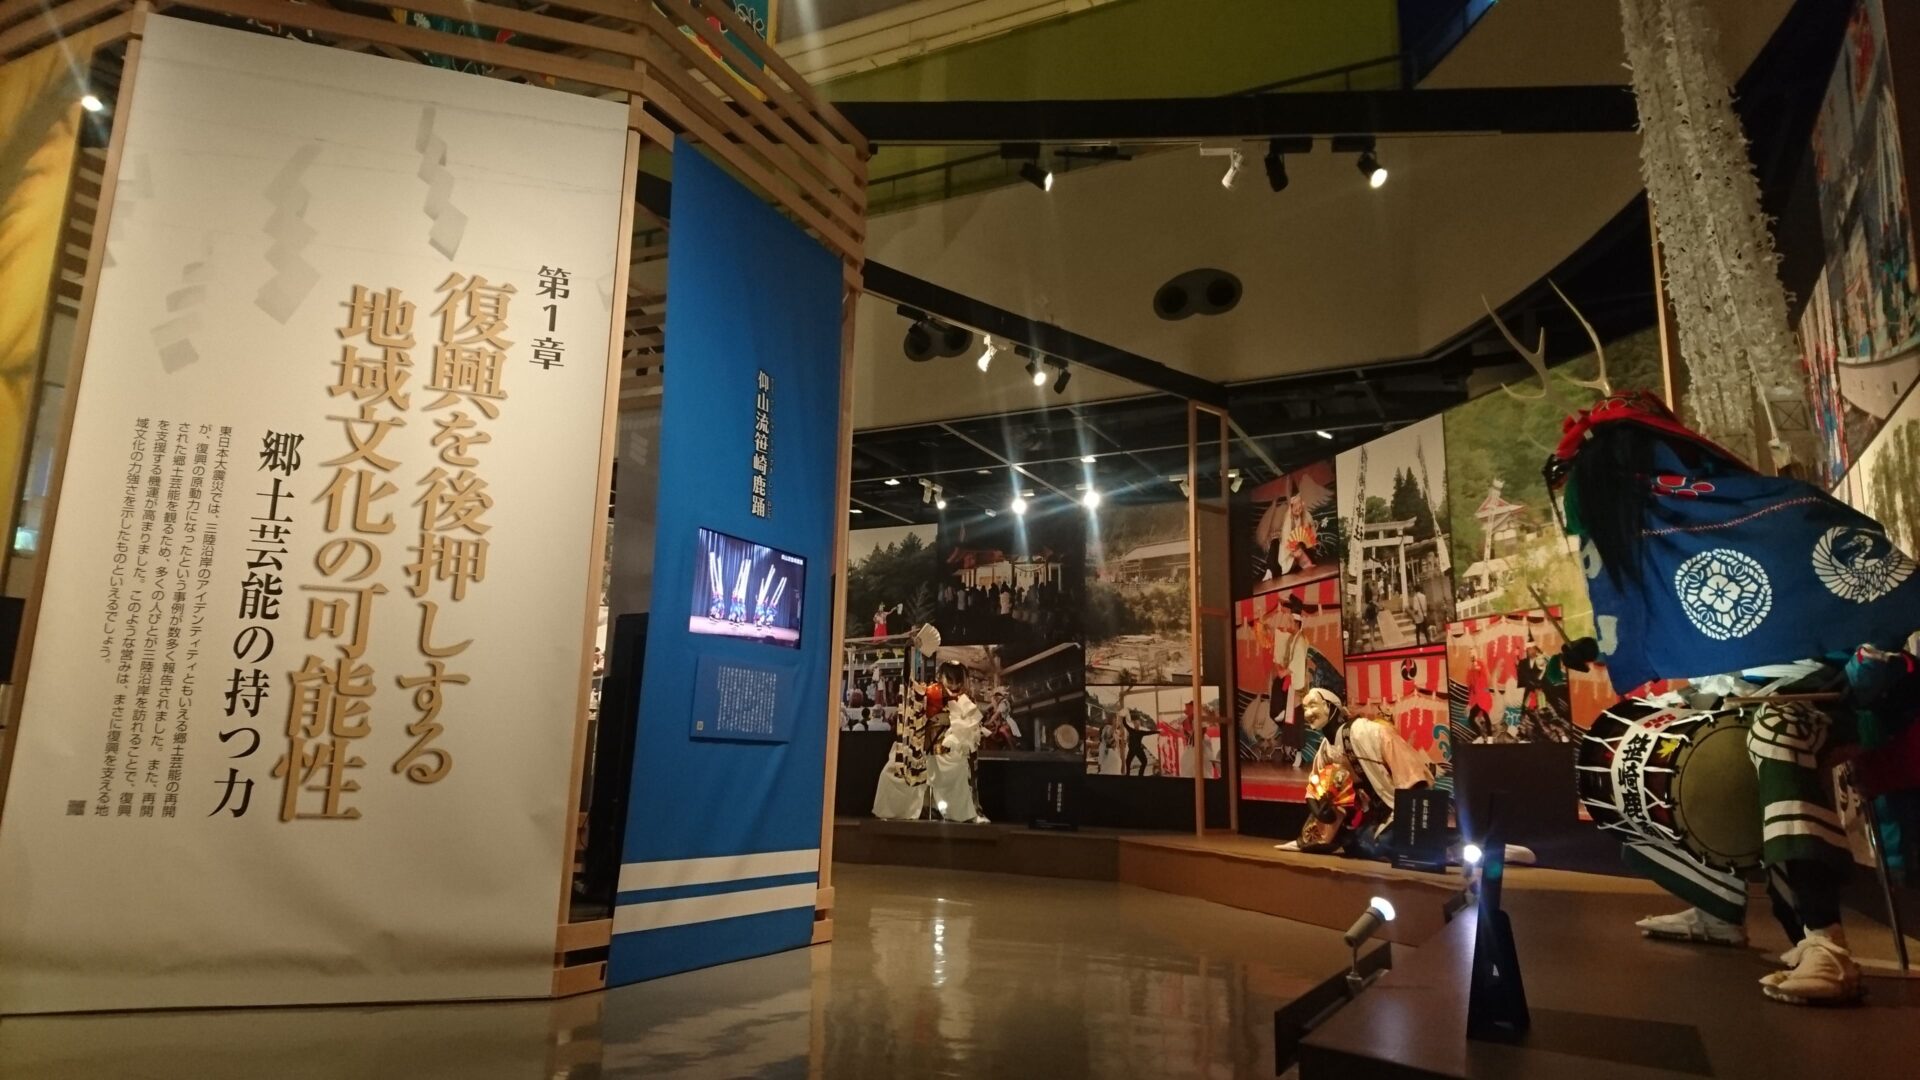 【博物之島新訊】311復興的原動力—日本國立民族學博物館展現支持復興的地方文化